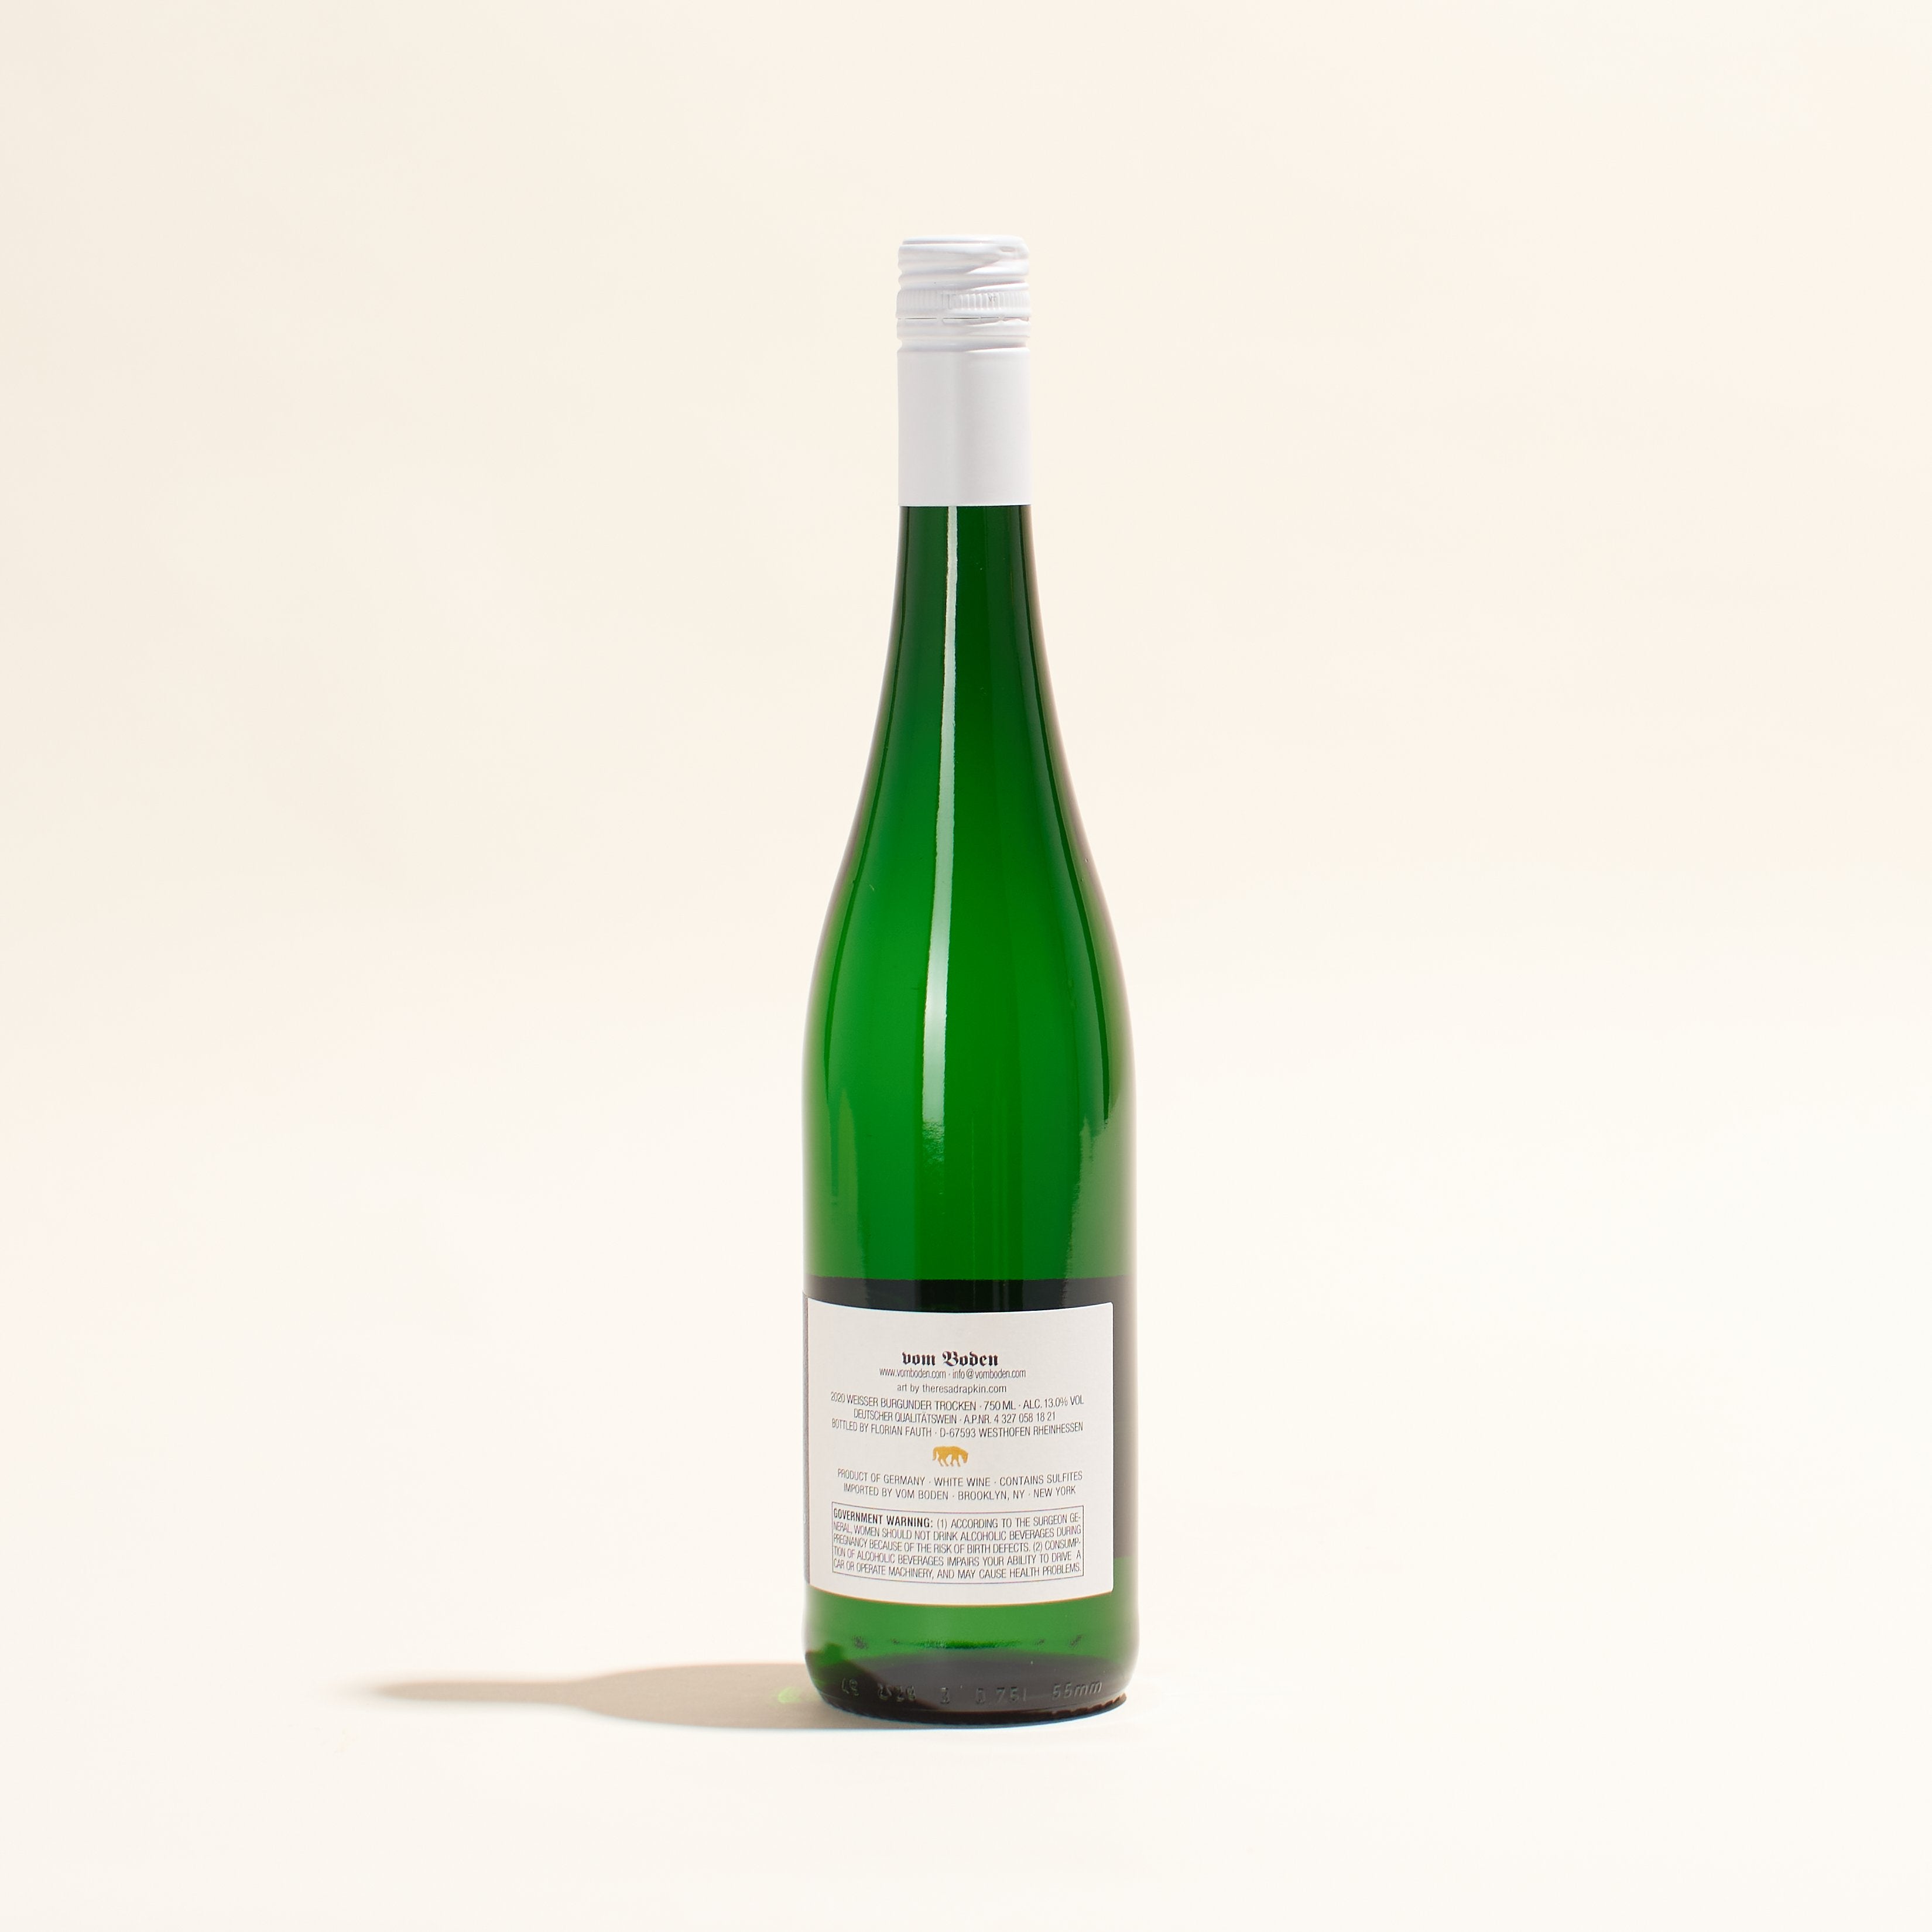 weissburgunder trocken weingut seehof natural white wine rheinhessen germany back label